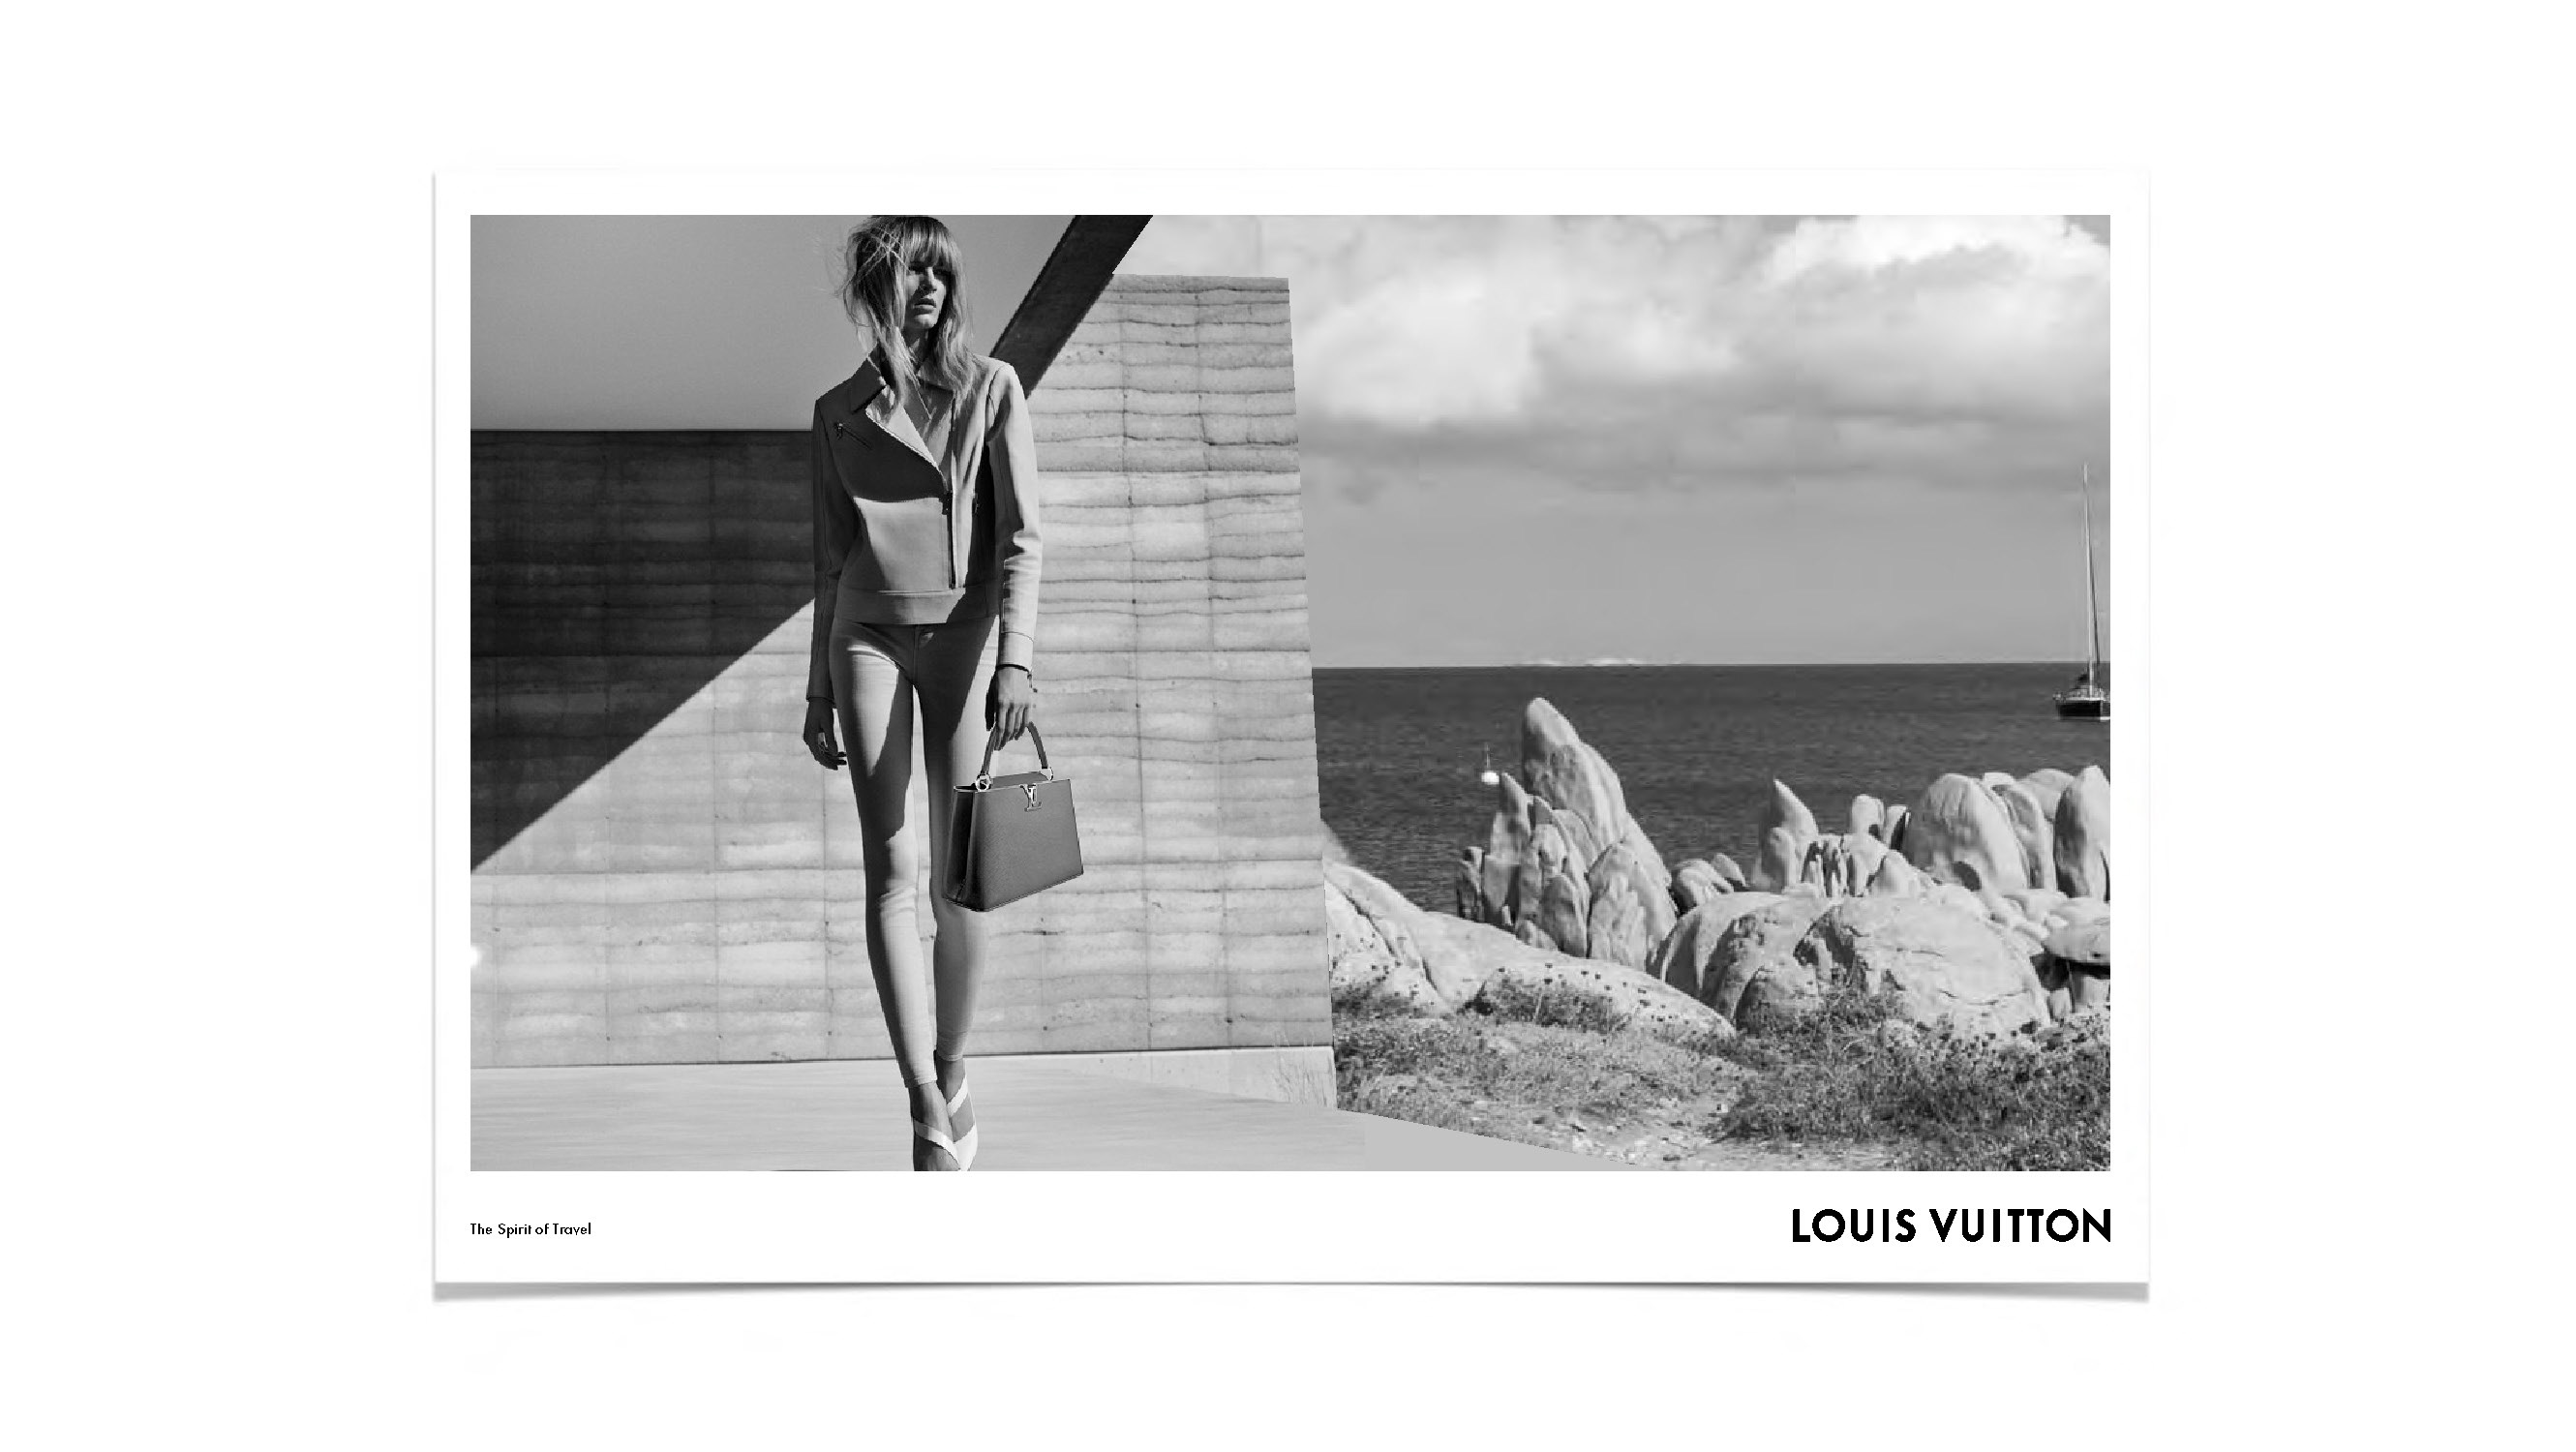 Louis Vuitton Art Of Travel 2019 Campaign (louis Vuitton)